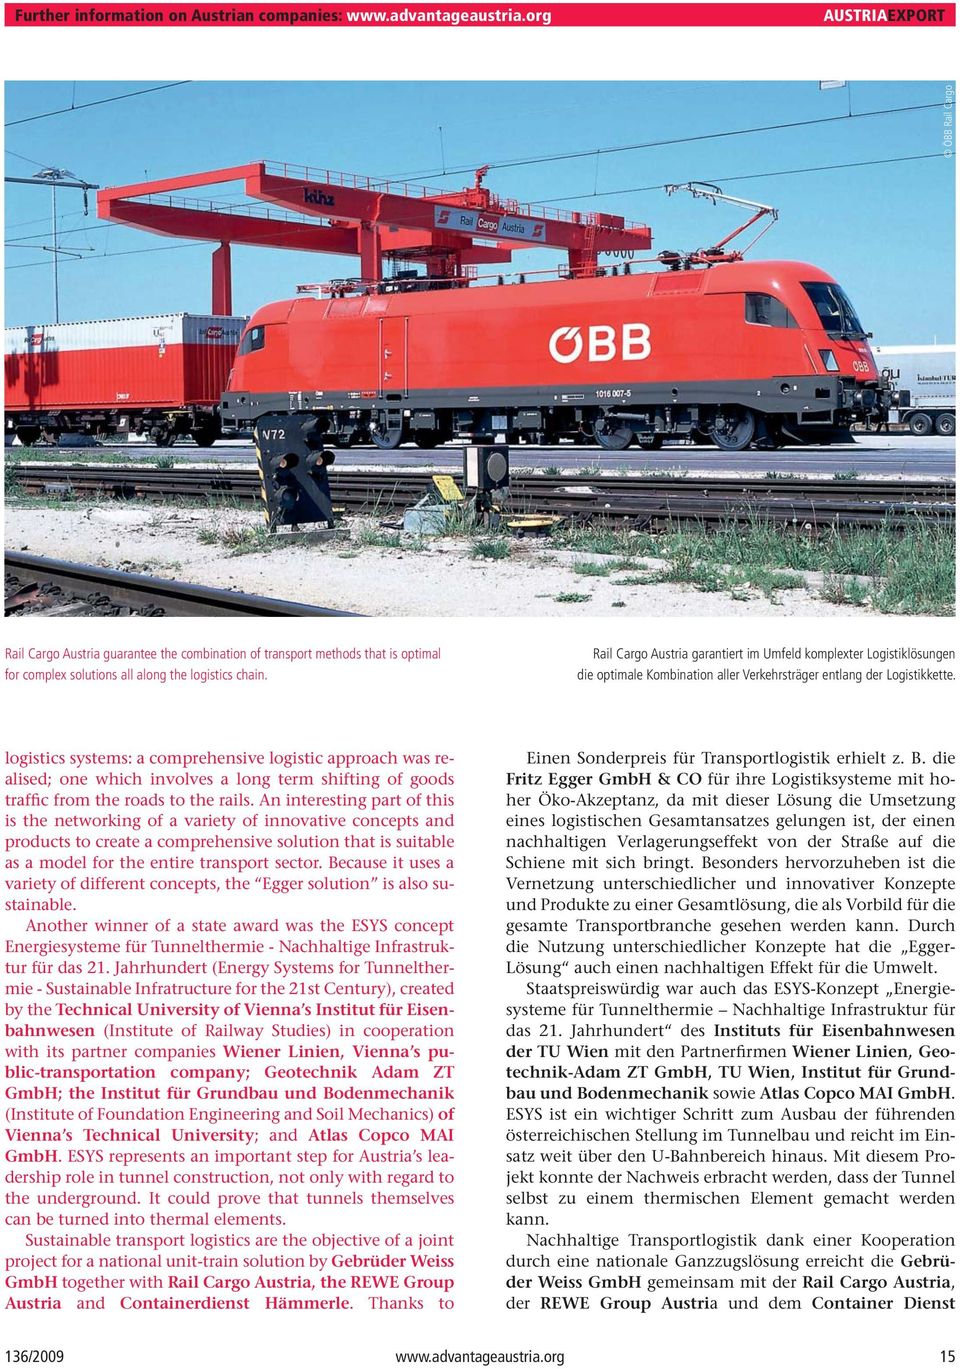 Rail Cargo Austria garantiert im Umfeld komplexter Logistiklösungen die optimale Kombination aller Verkehrsträger entlang der Logistikkette.